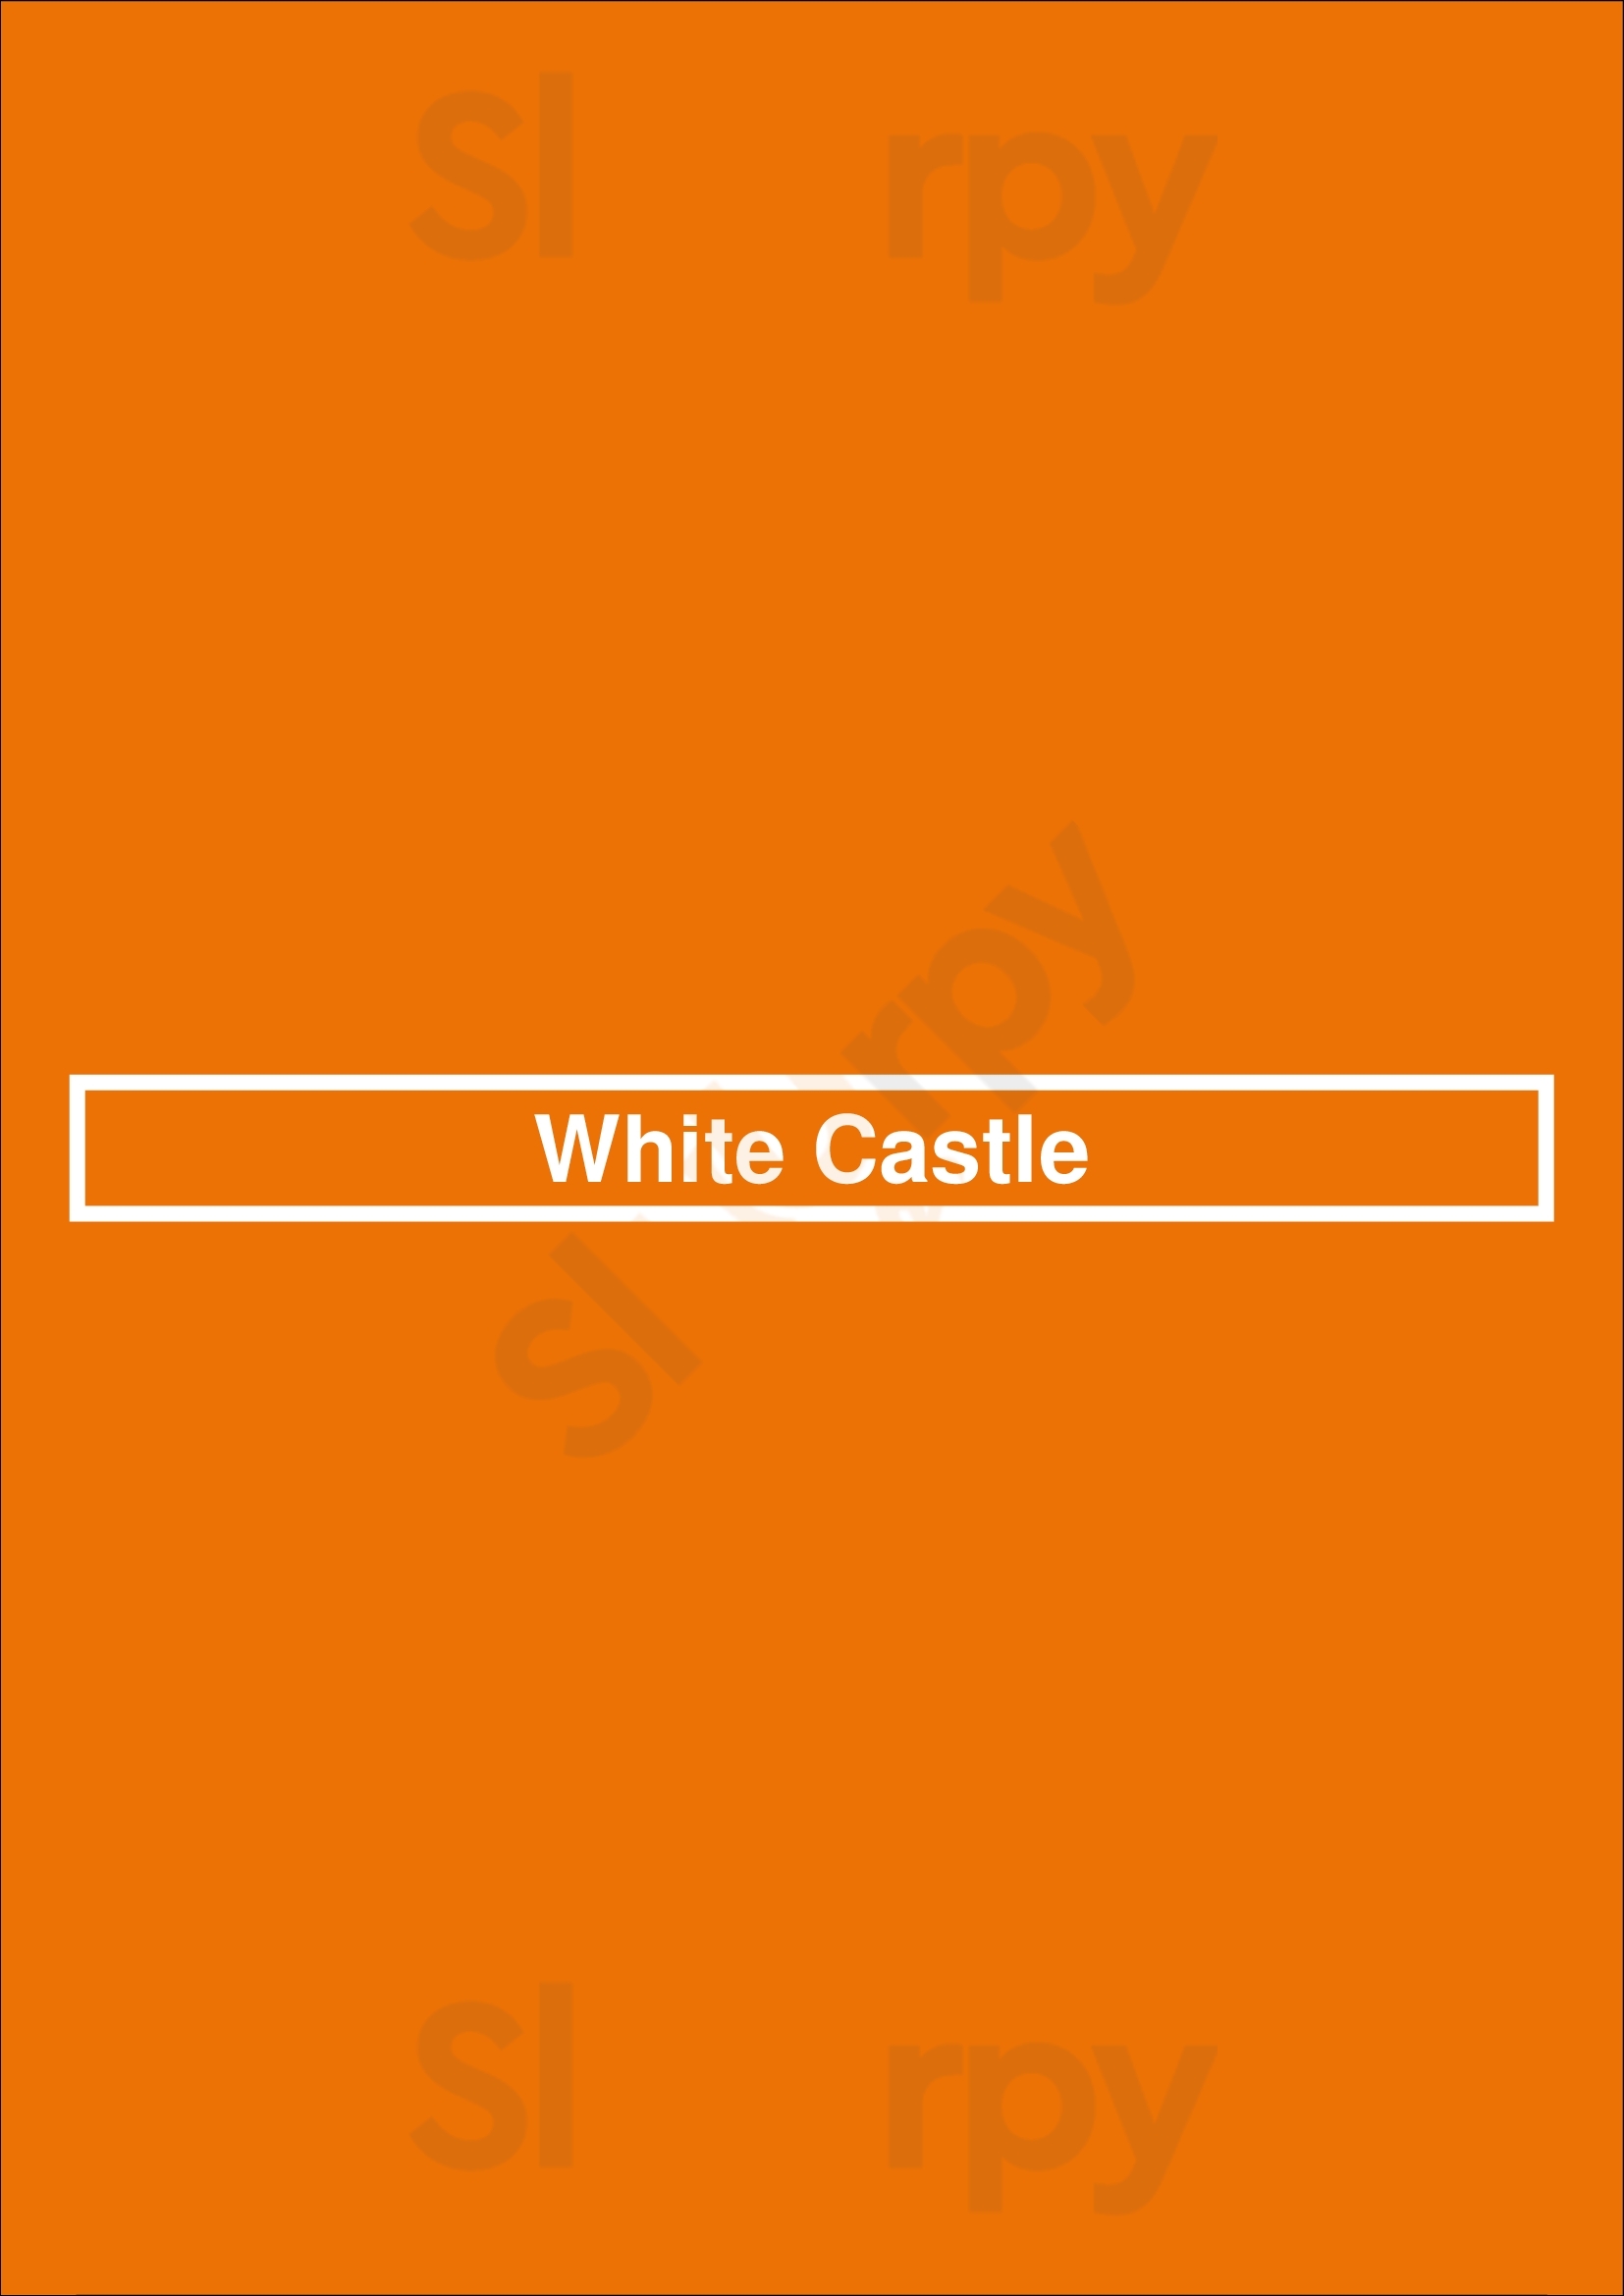 White Castle Saint Louis Menu - 1